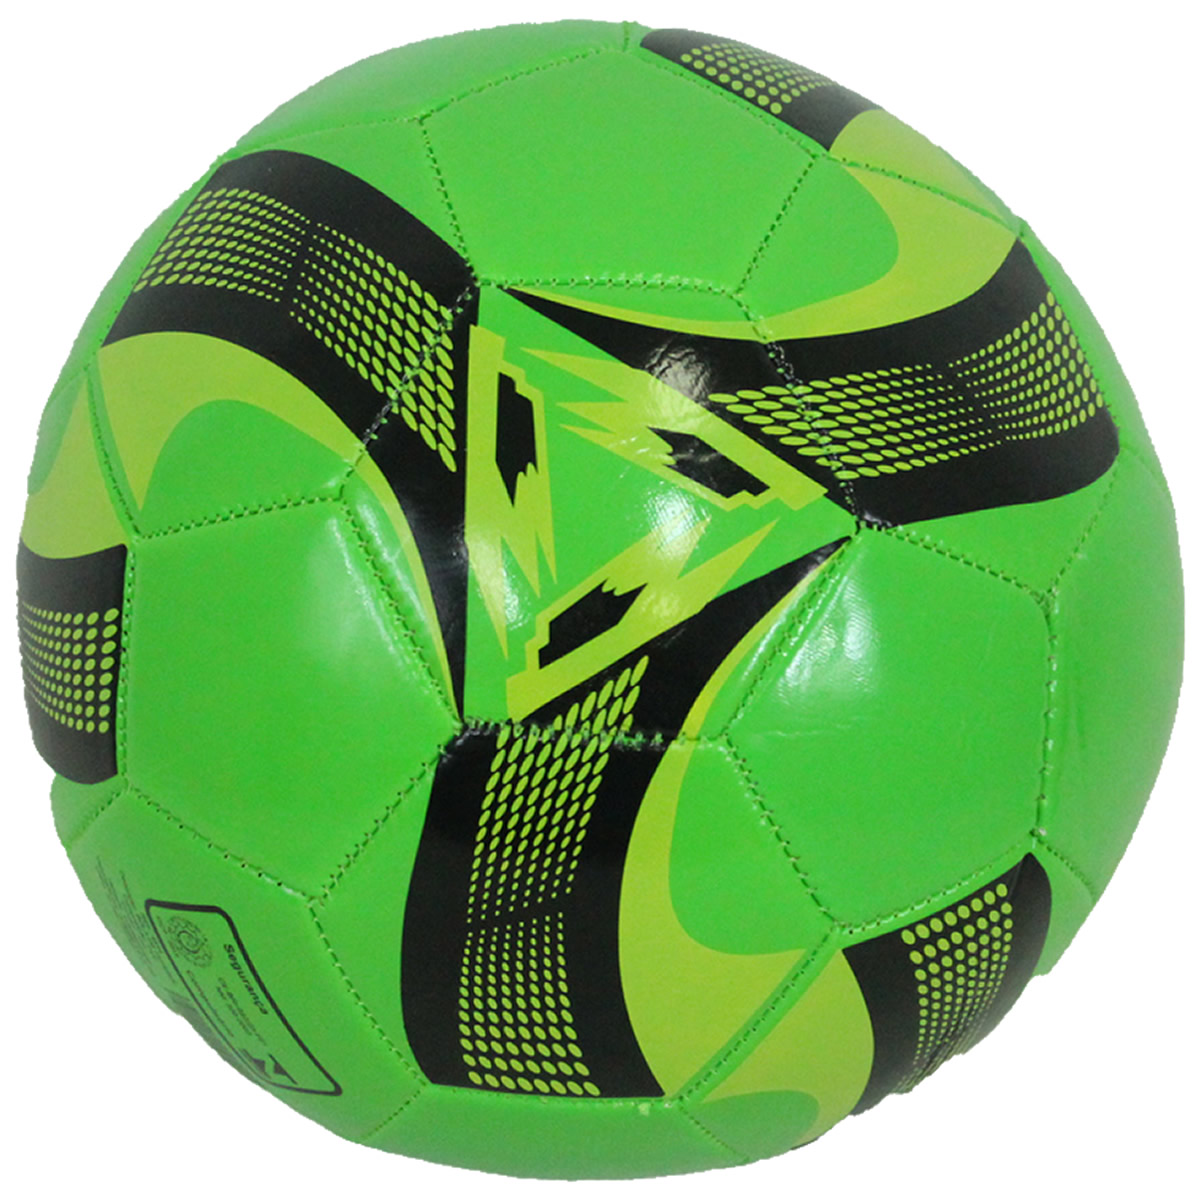 Bola de Futebol de Campo Costurada Tamanho Oficial Amigold